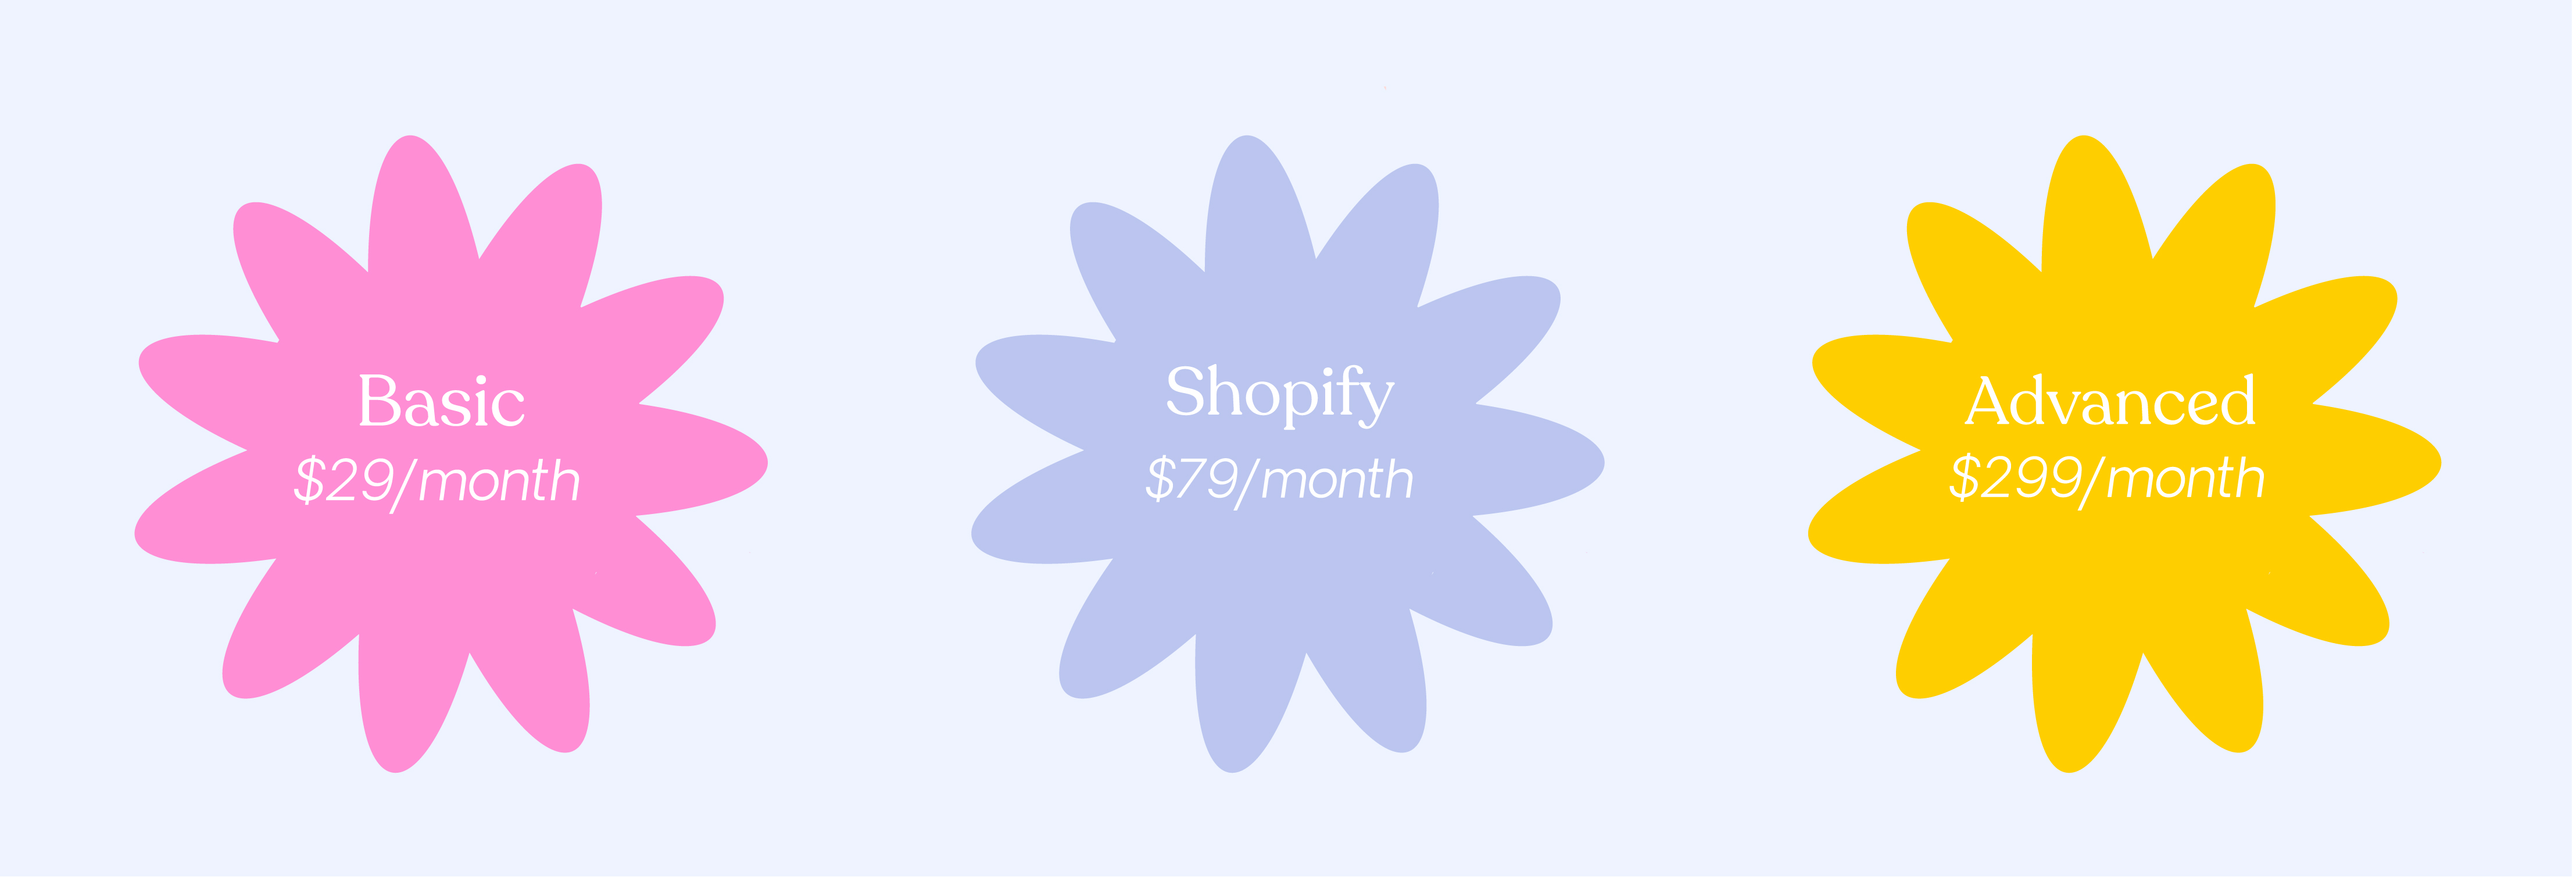 Shopify Website Designer - Pricing - Crystal Oliver
